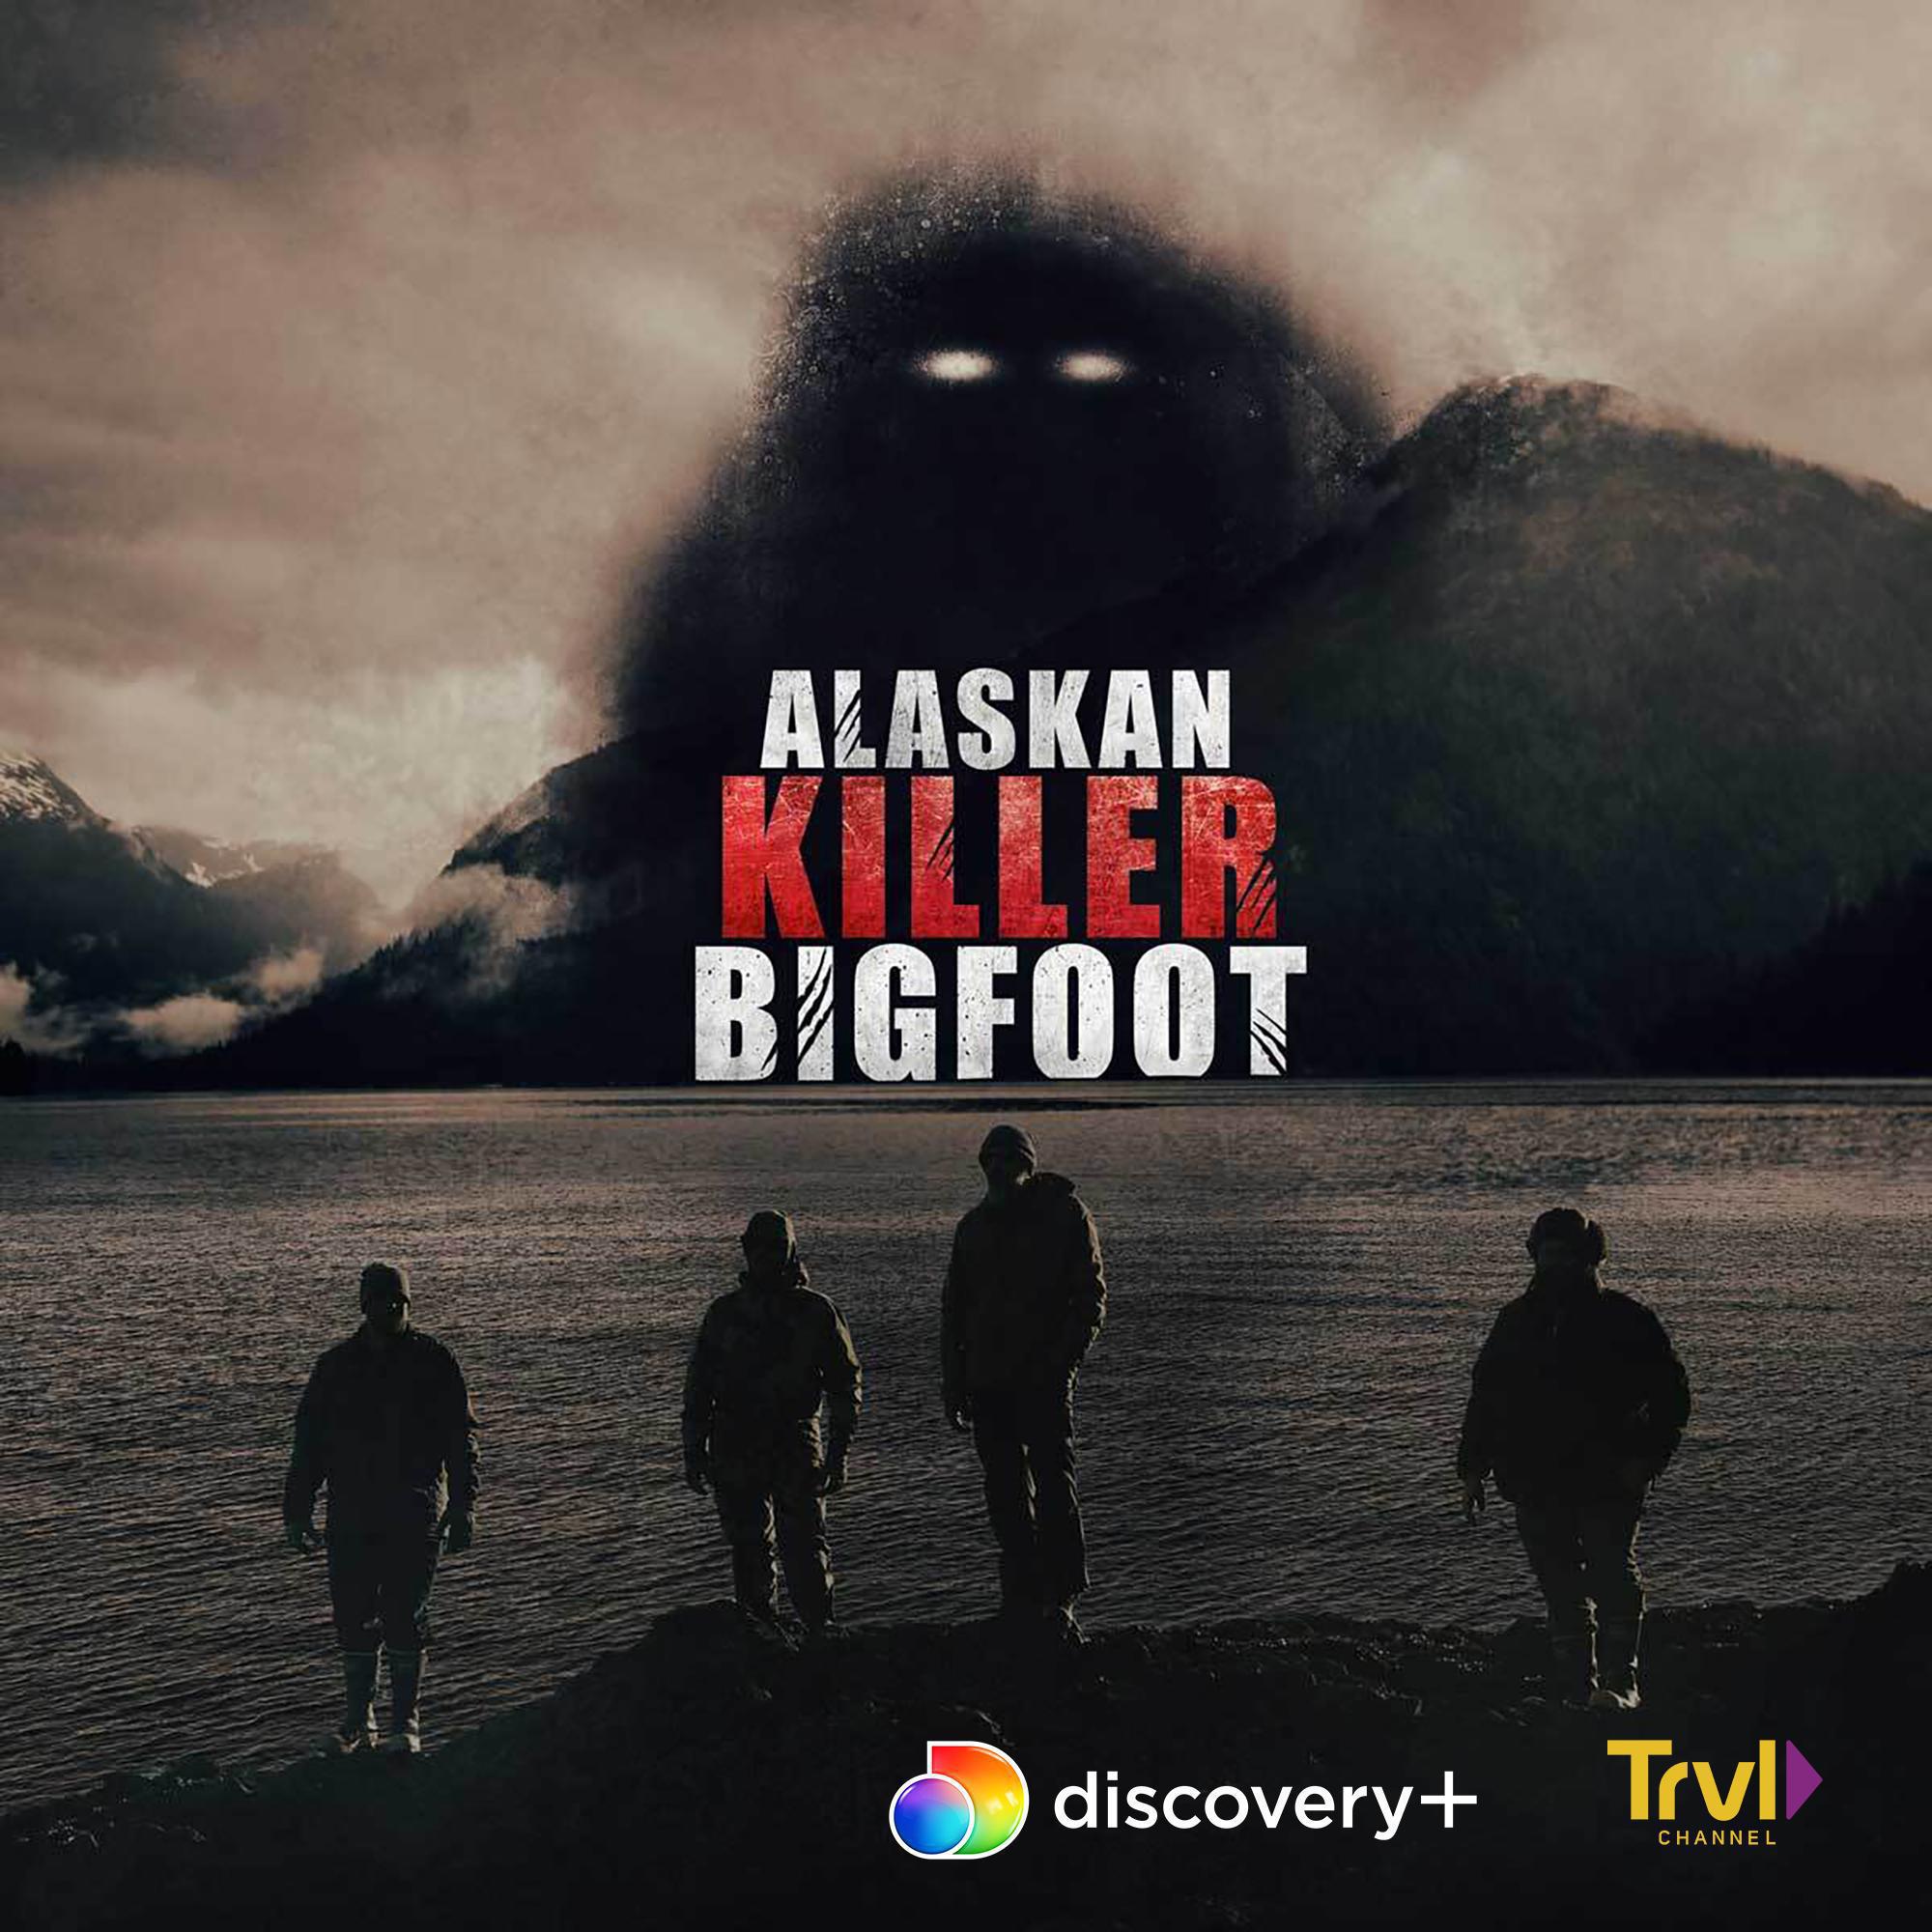 TV ratings for Alaskan Killer Bigfoot in Chile. Discovery+ TV series